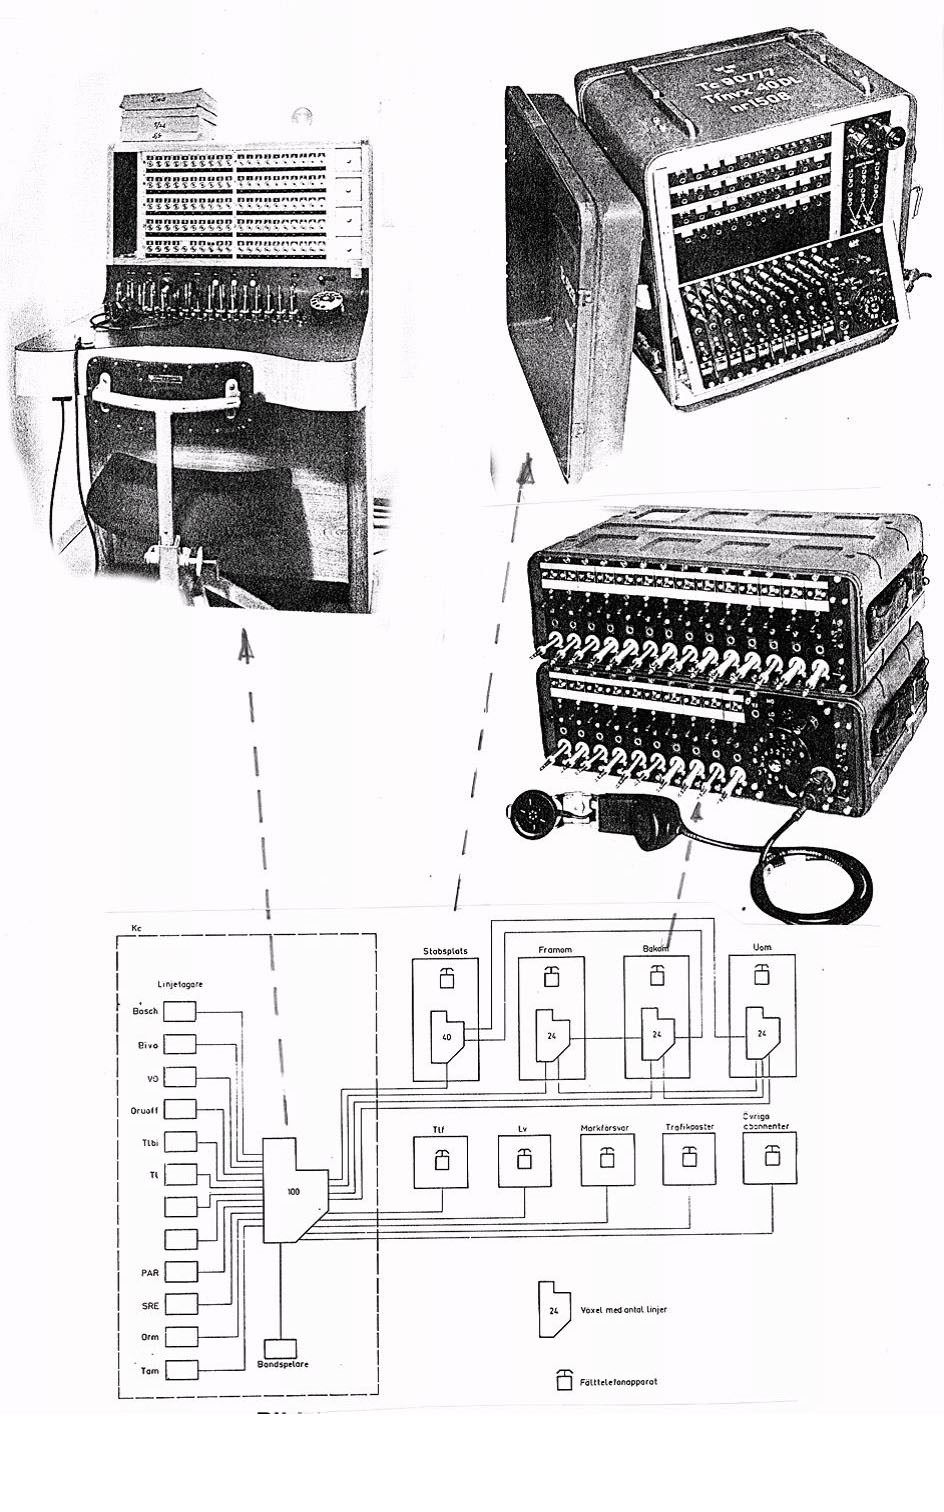 Telefonväxlar vid Bas 60 Automatiska växlar När Lfc i Stril 60 byggdes under 60-talet introducerades de första automatiska